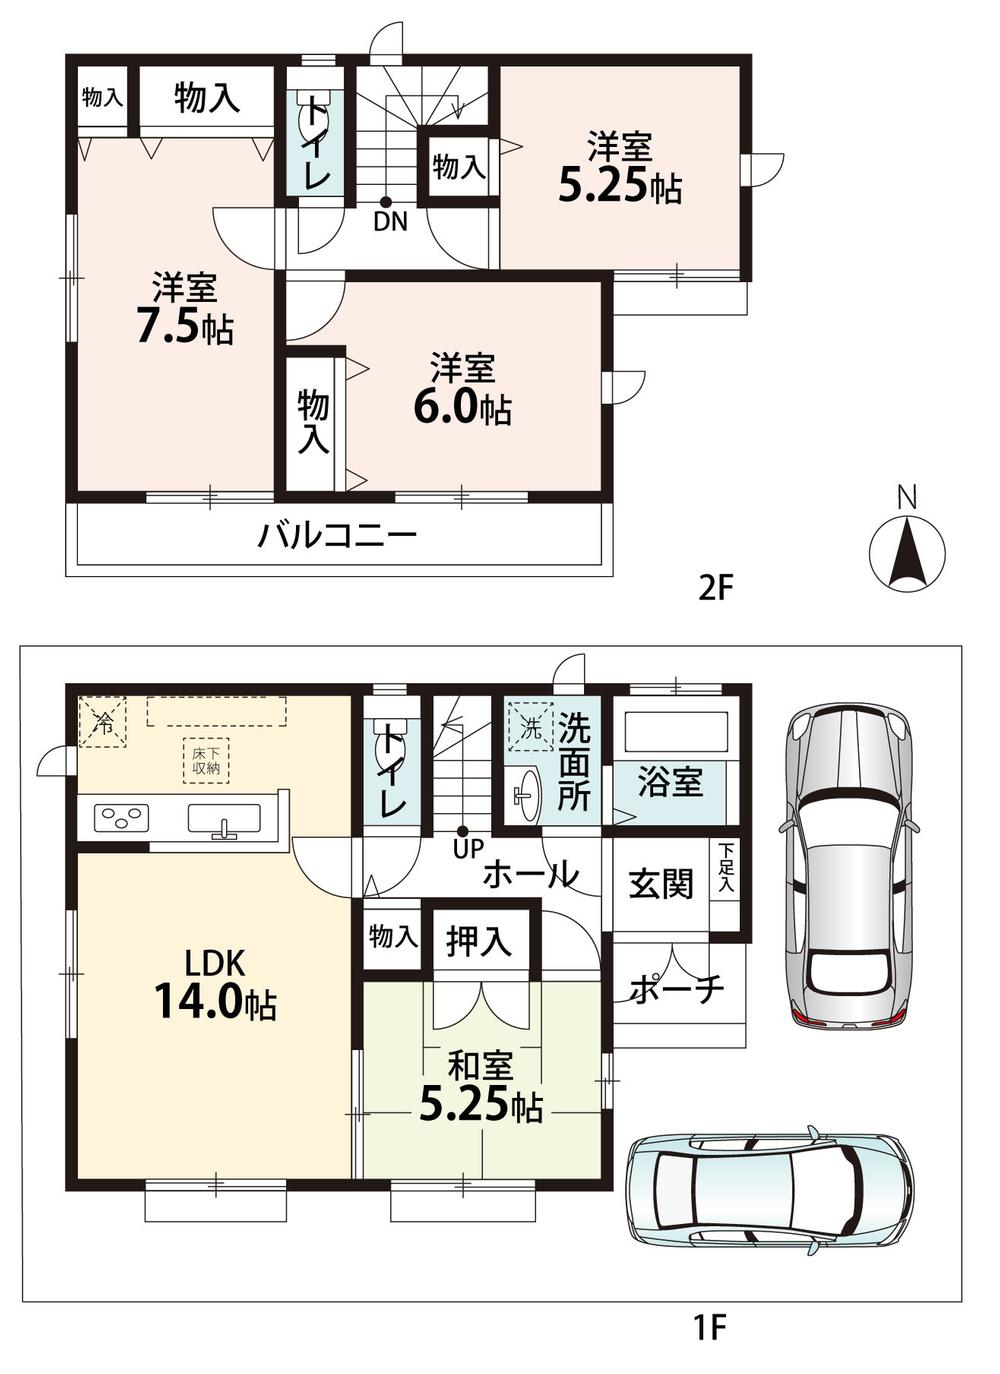 Floor plan. (E section), Price 28.8 million yen, 4LDK, Land area 100.14 sq m , Building area 91.5 sq m